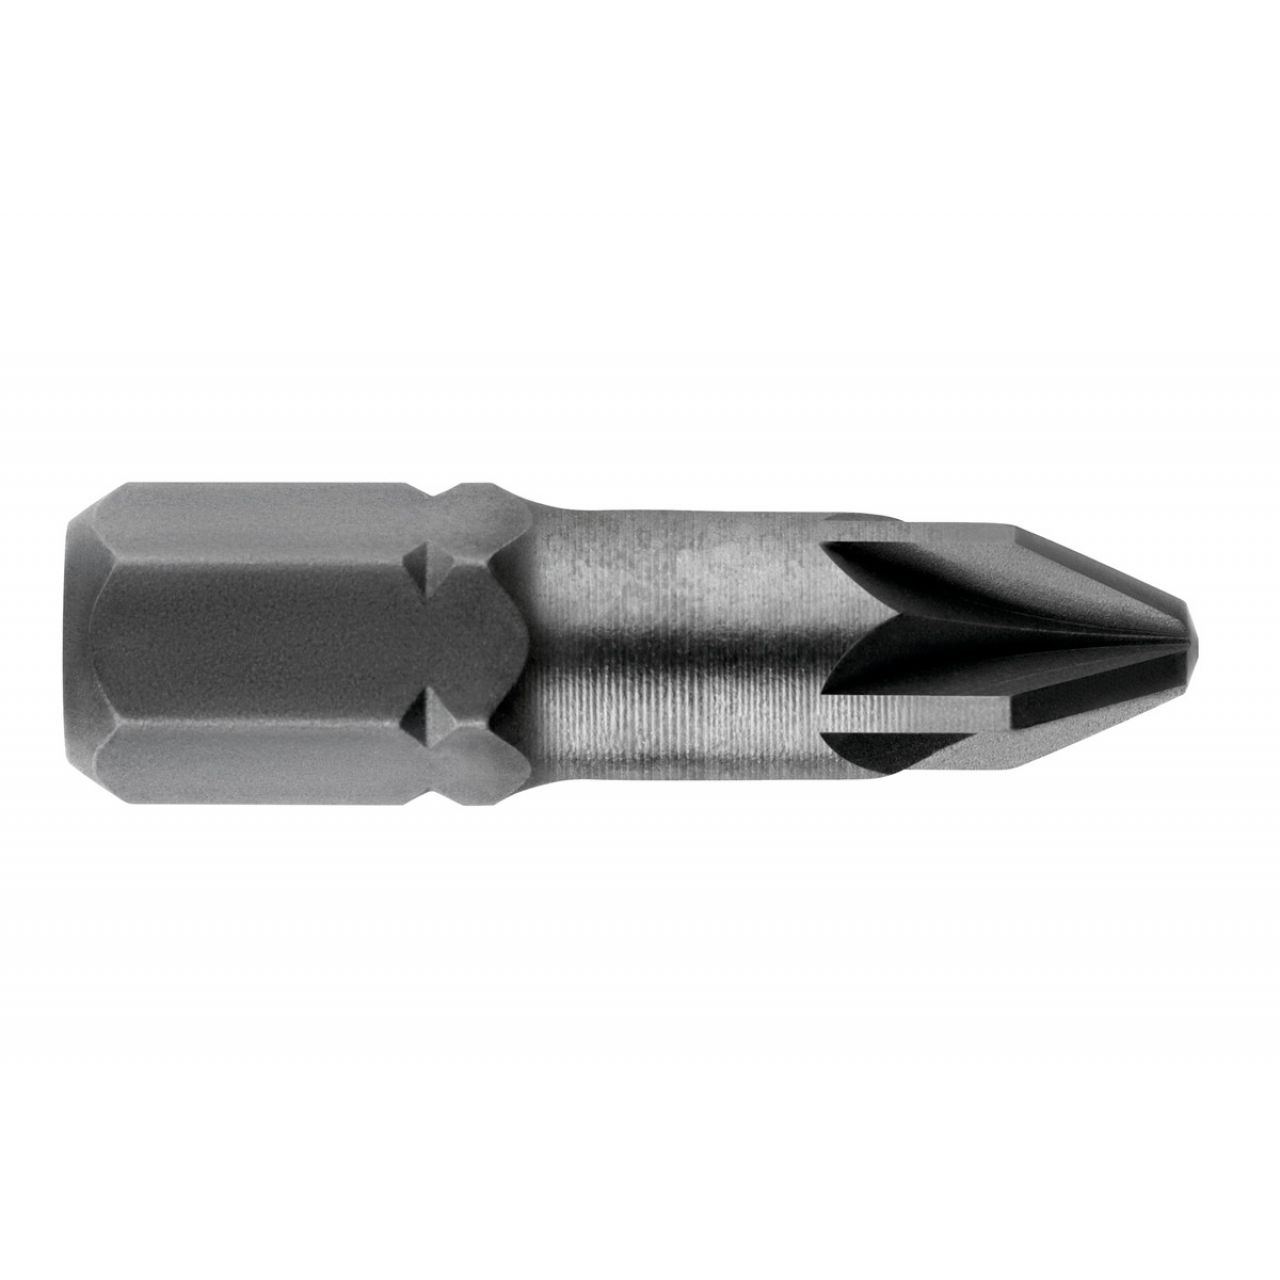 3 puntas Pozidriv PZ 2/ 25 mm Torsion (628518000)